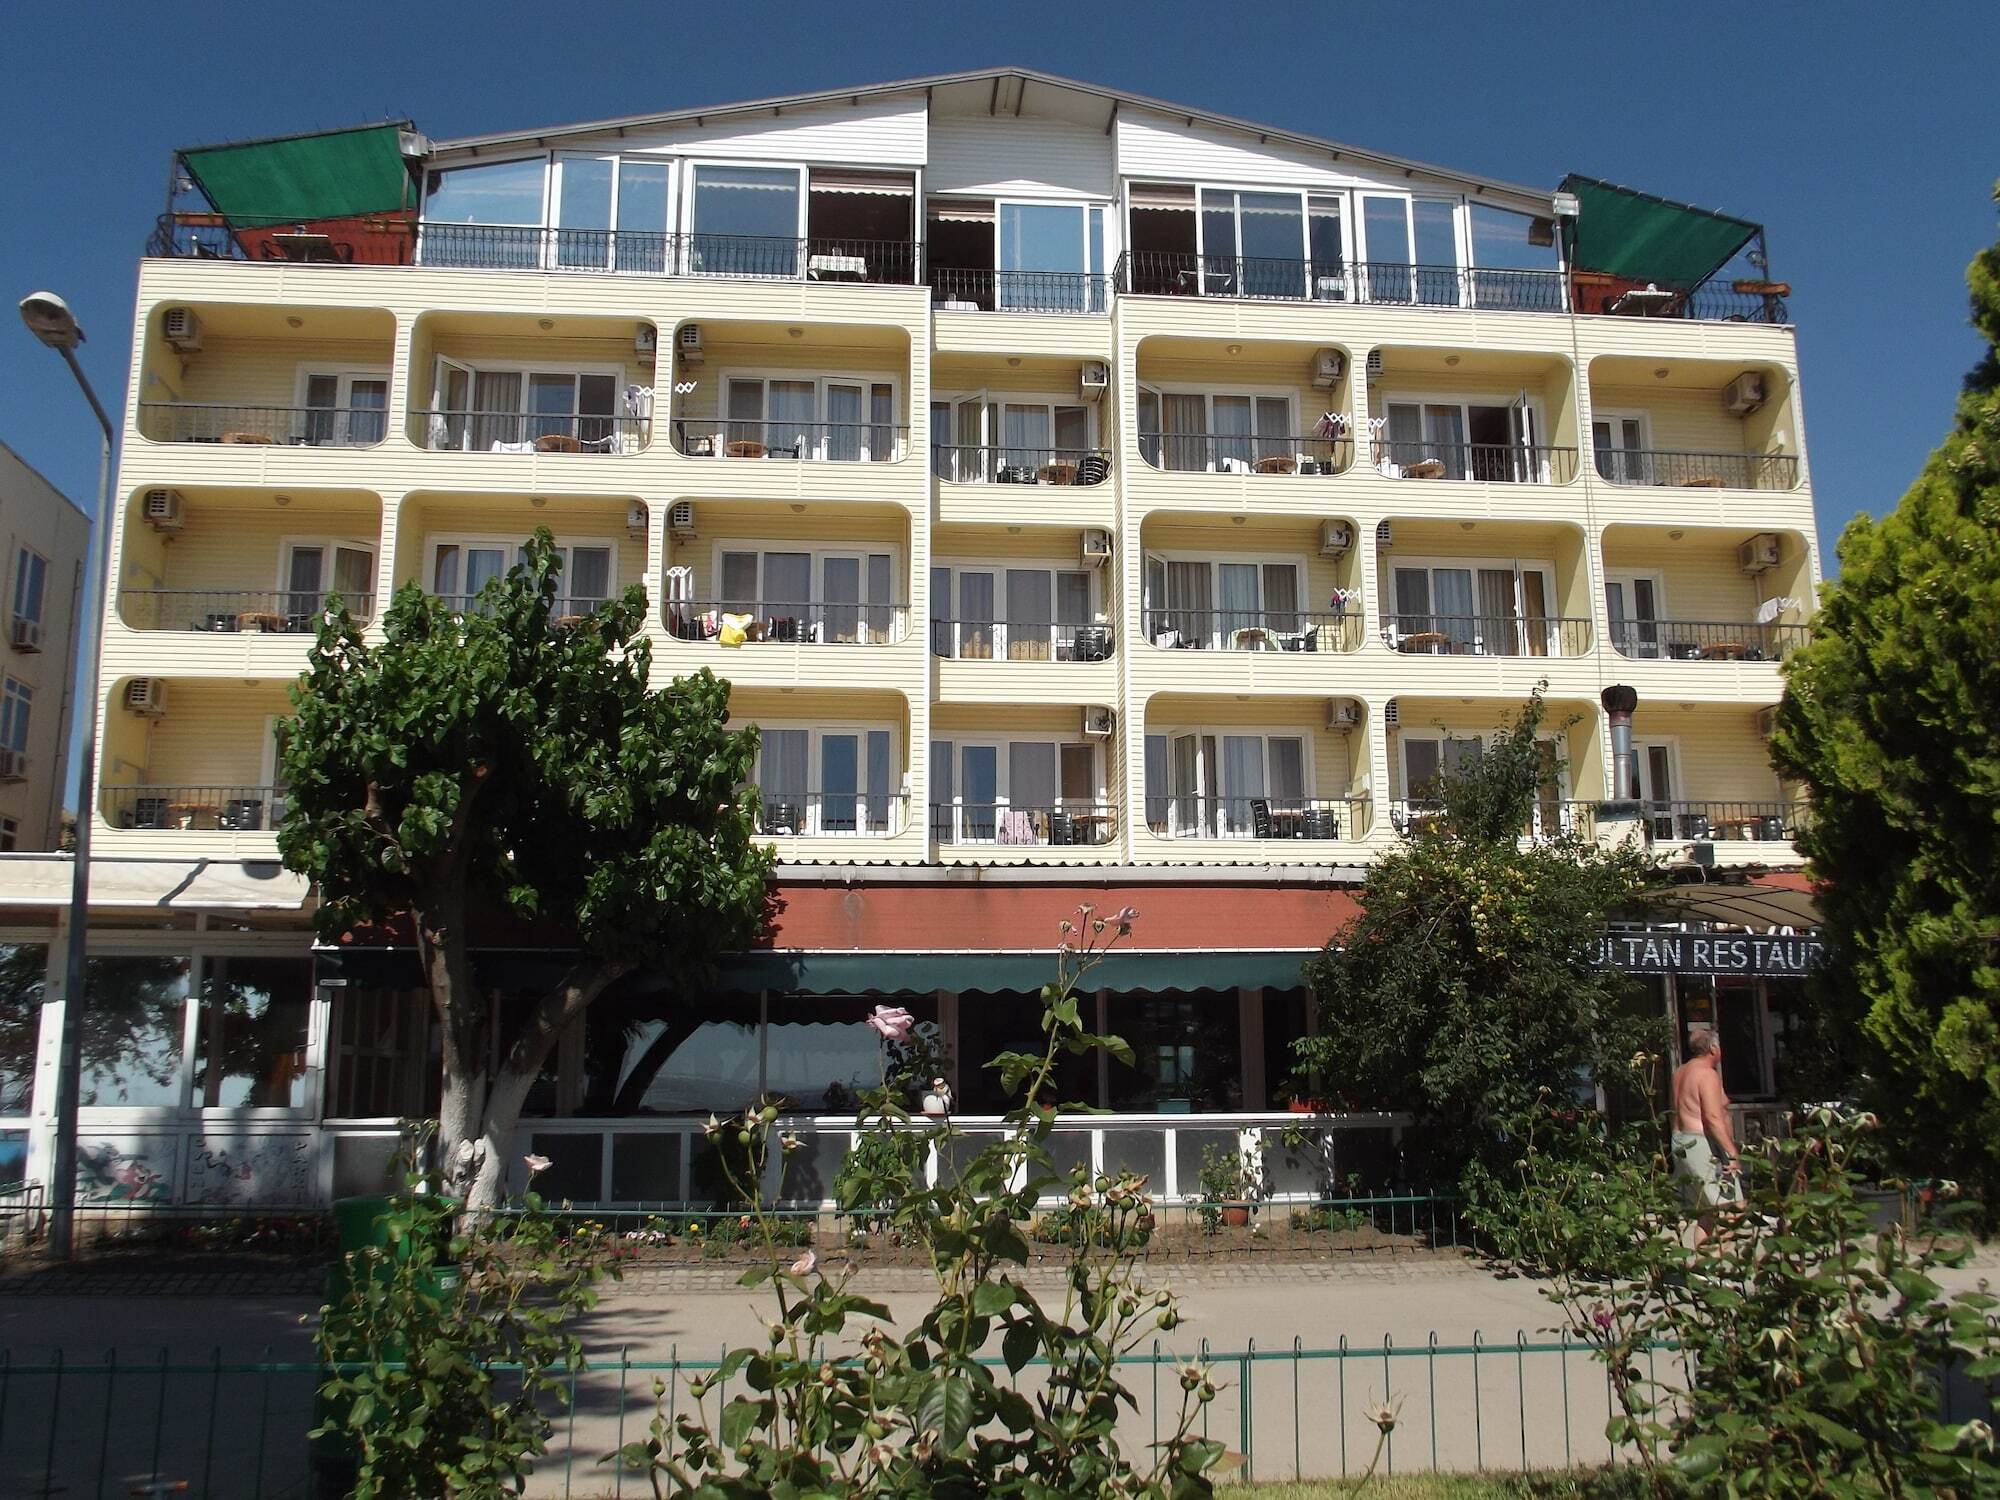 Hotel Yagci Erdek Exterior photo